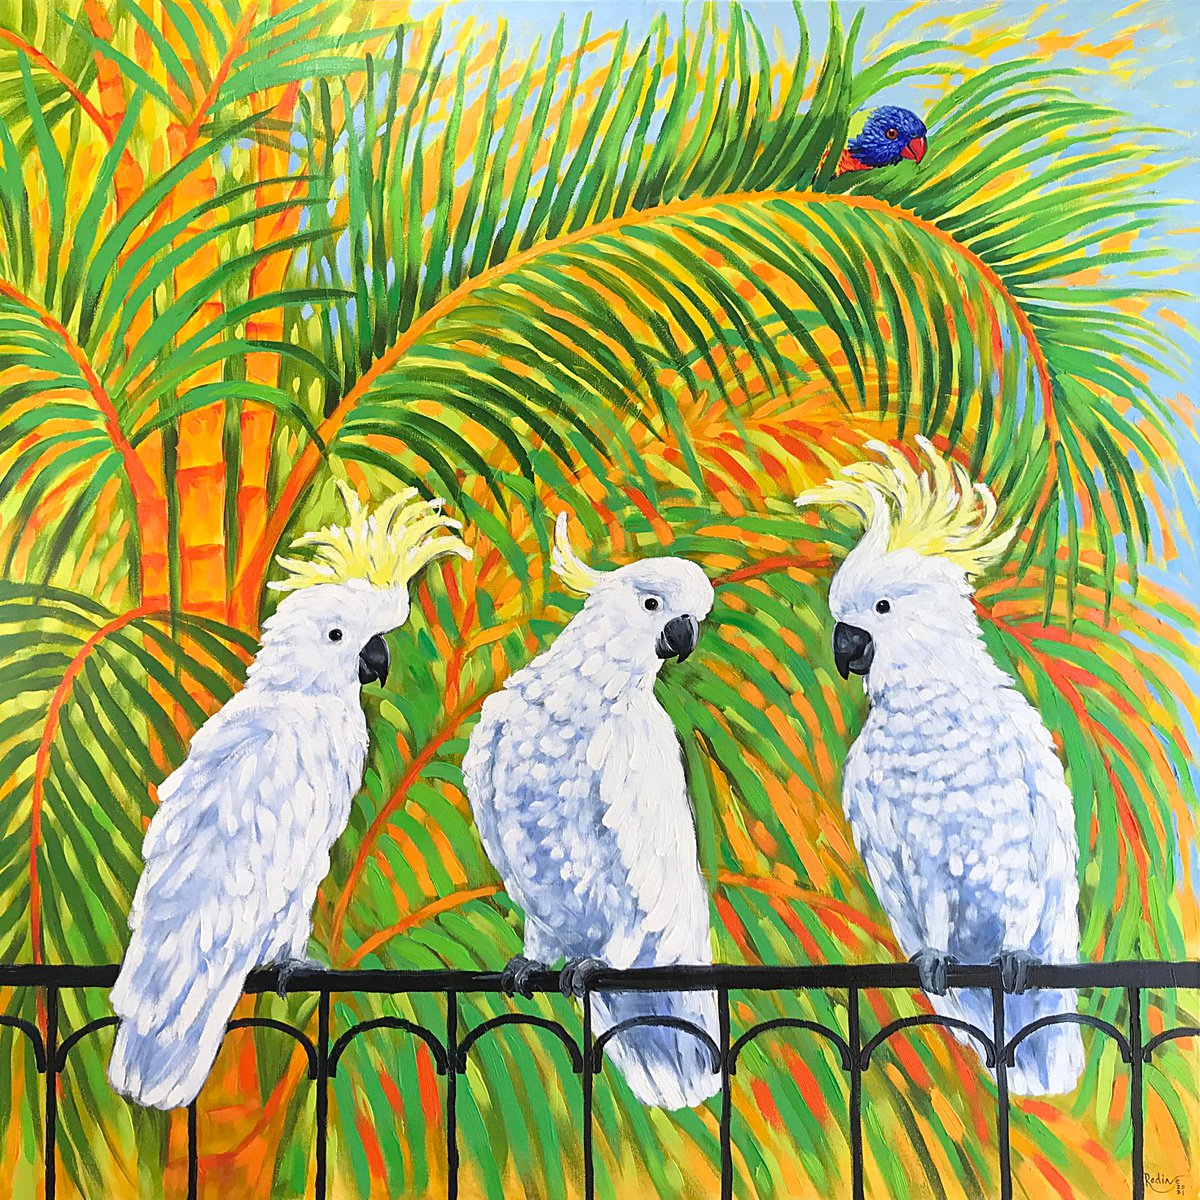 Cockatoos and rainbow lorikeet